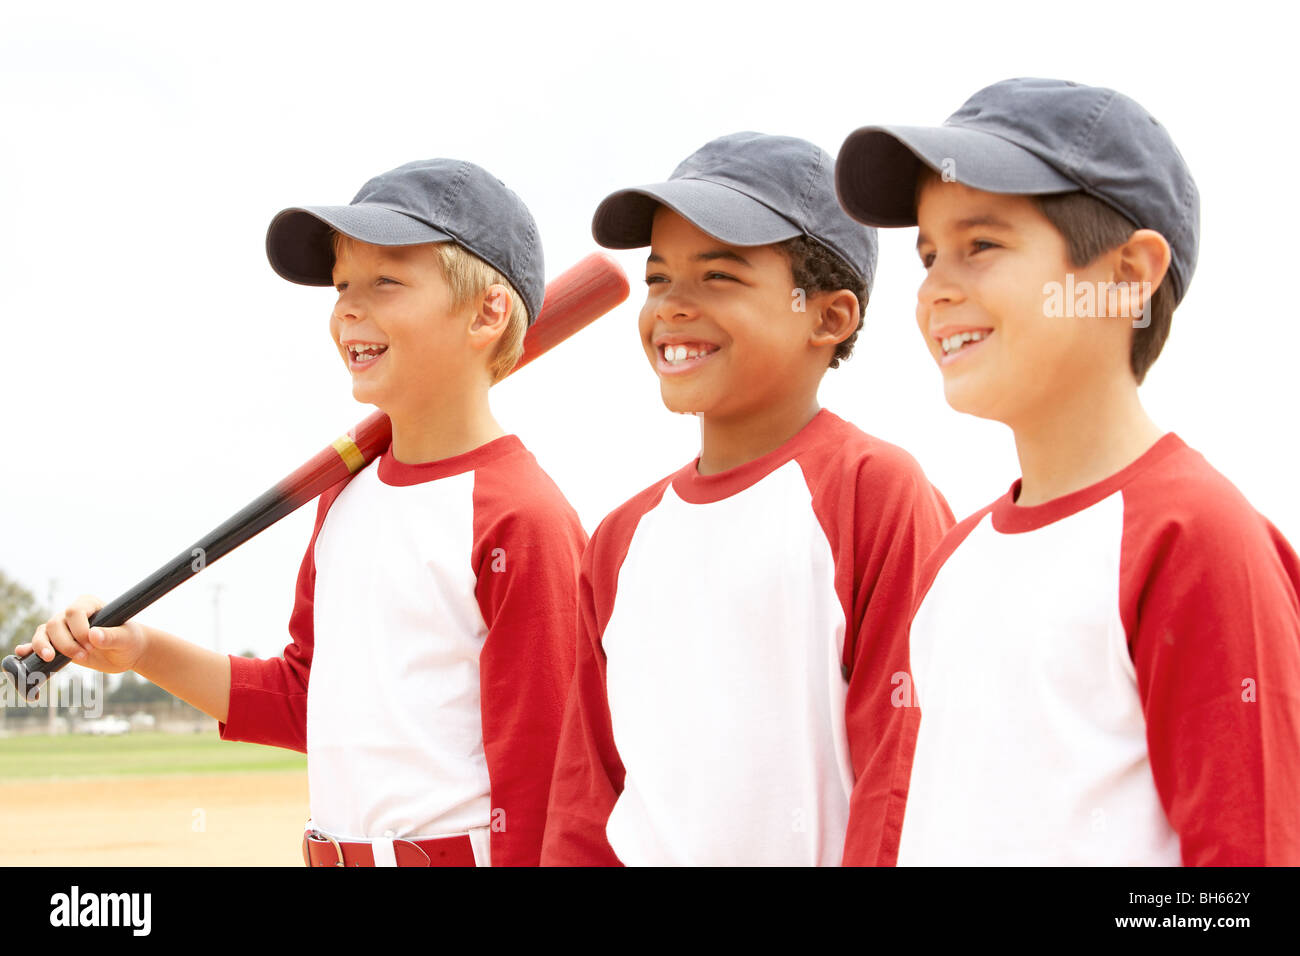 Los muchachos en el equipo de béisbol Foto de stock